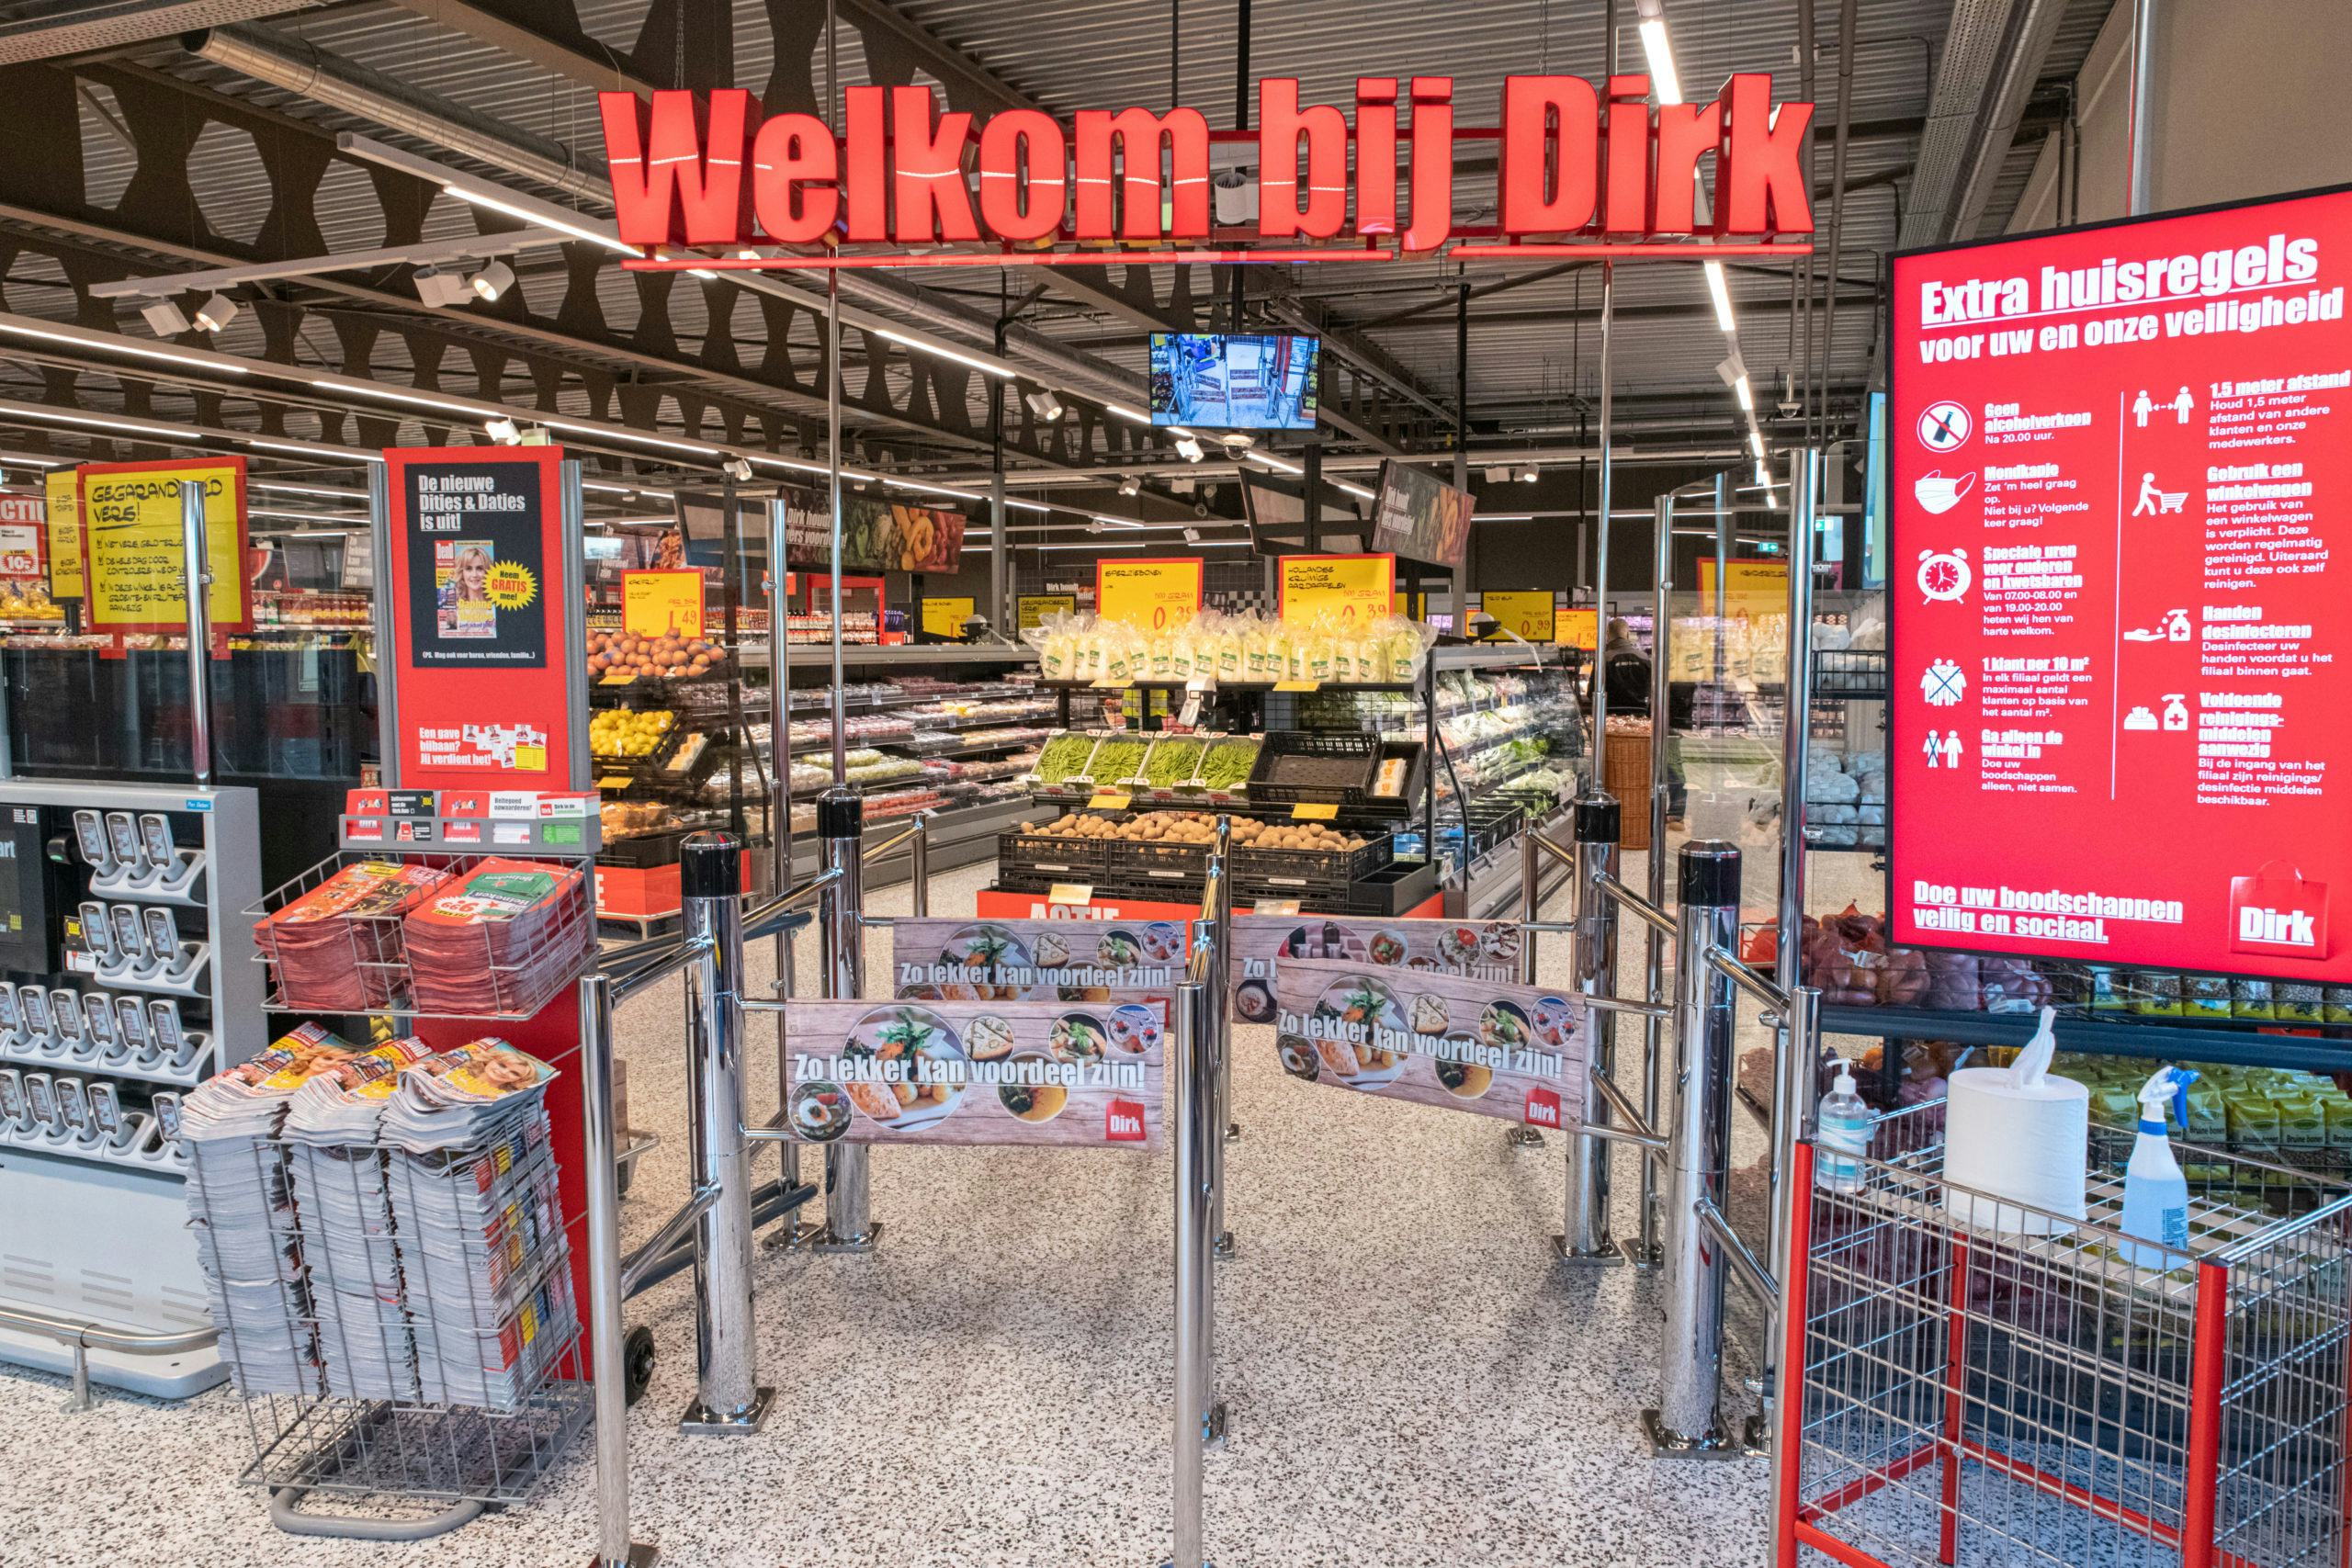 De entree van de nieuwe vestiging van Dirk in Volendam. Foto: Dirk